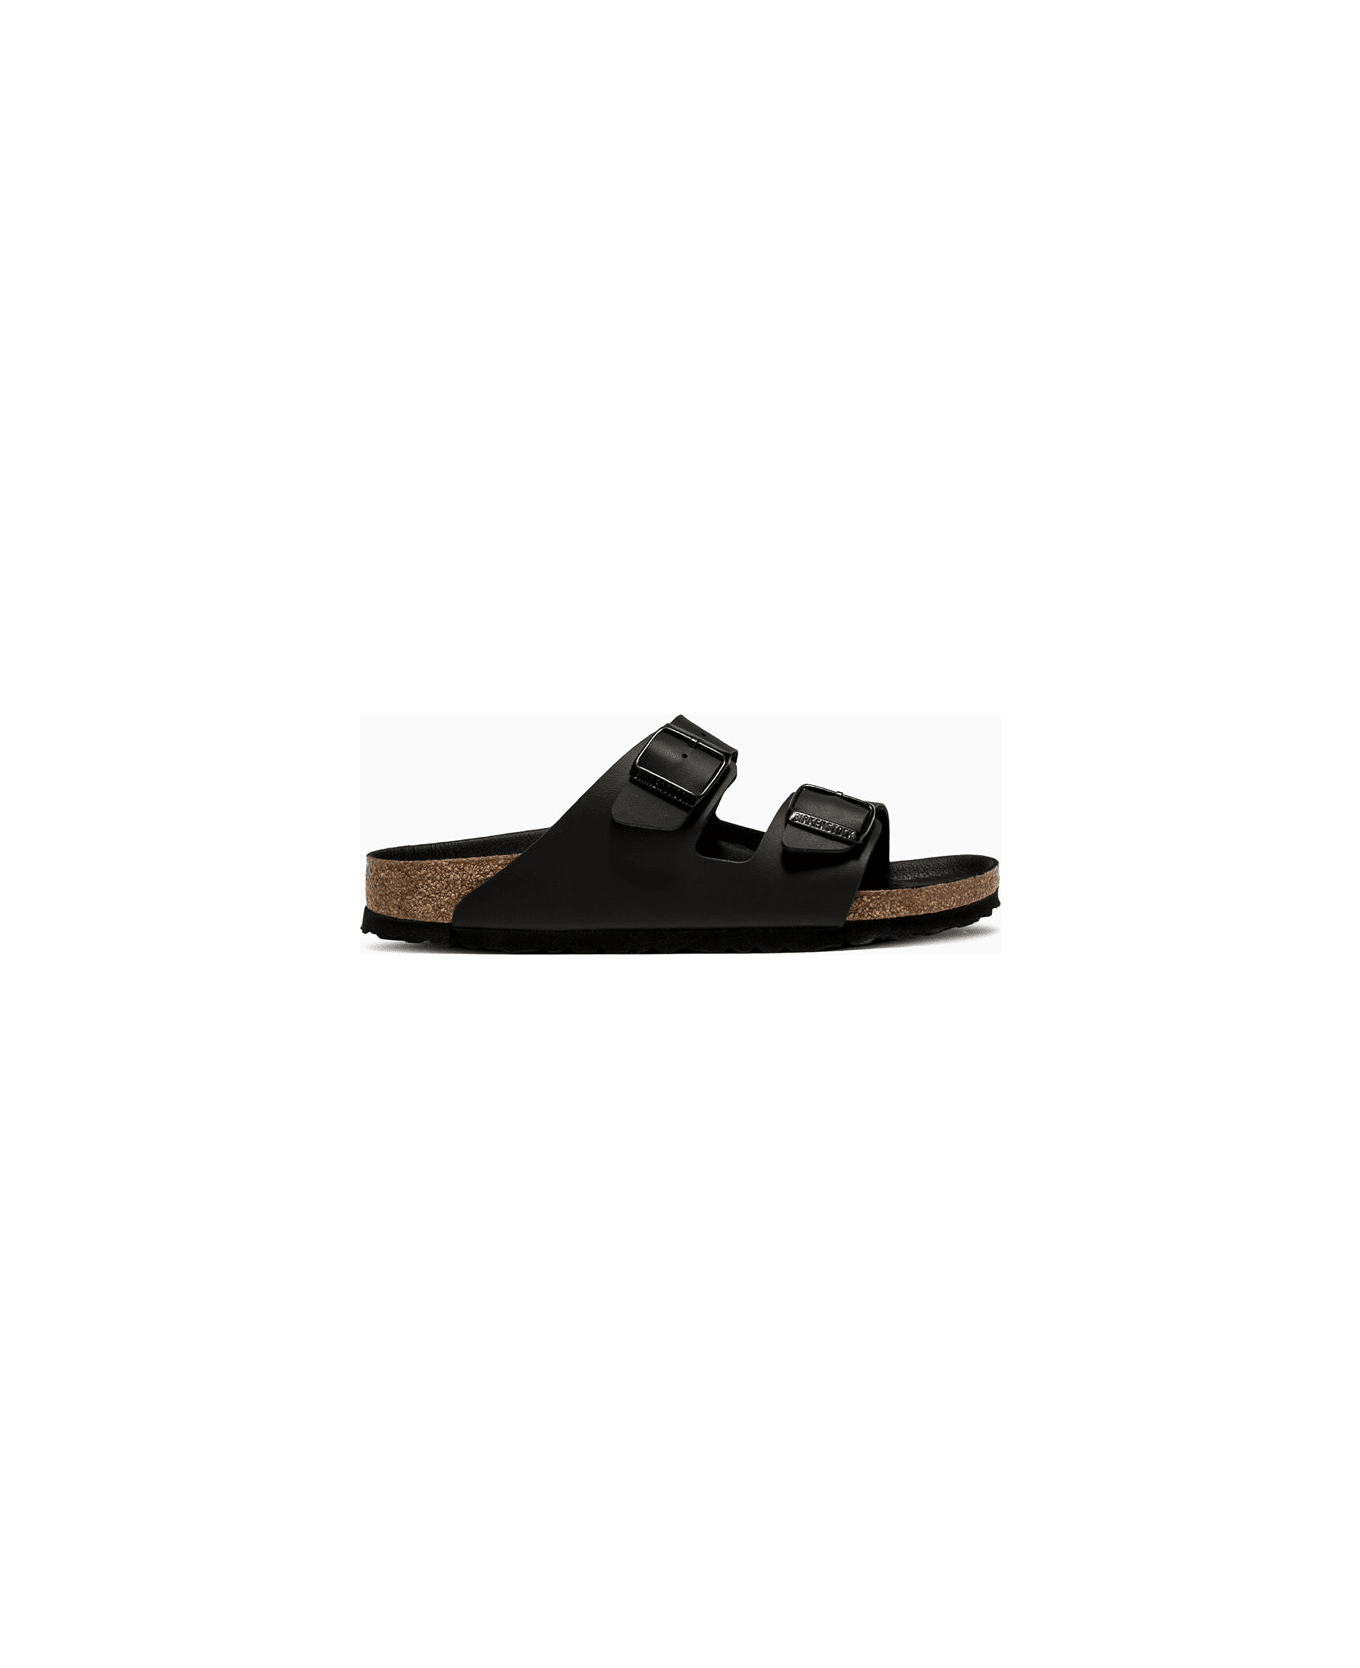 Birkenstock Arizona Sandals 1019069 - Black